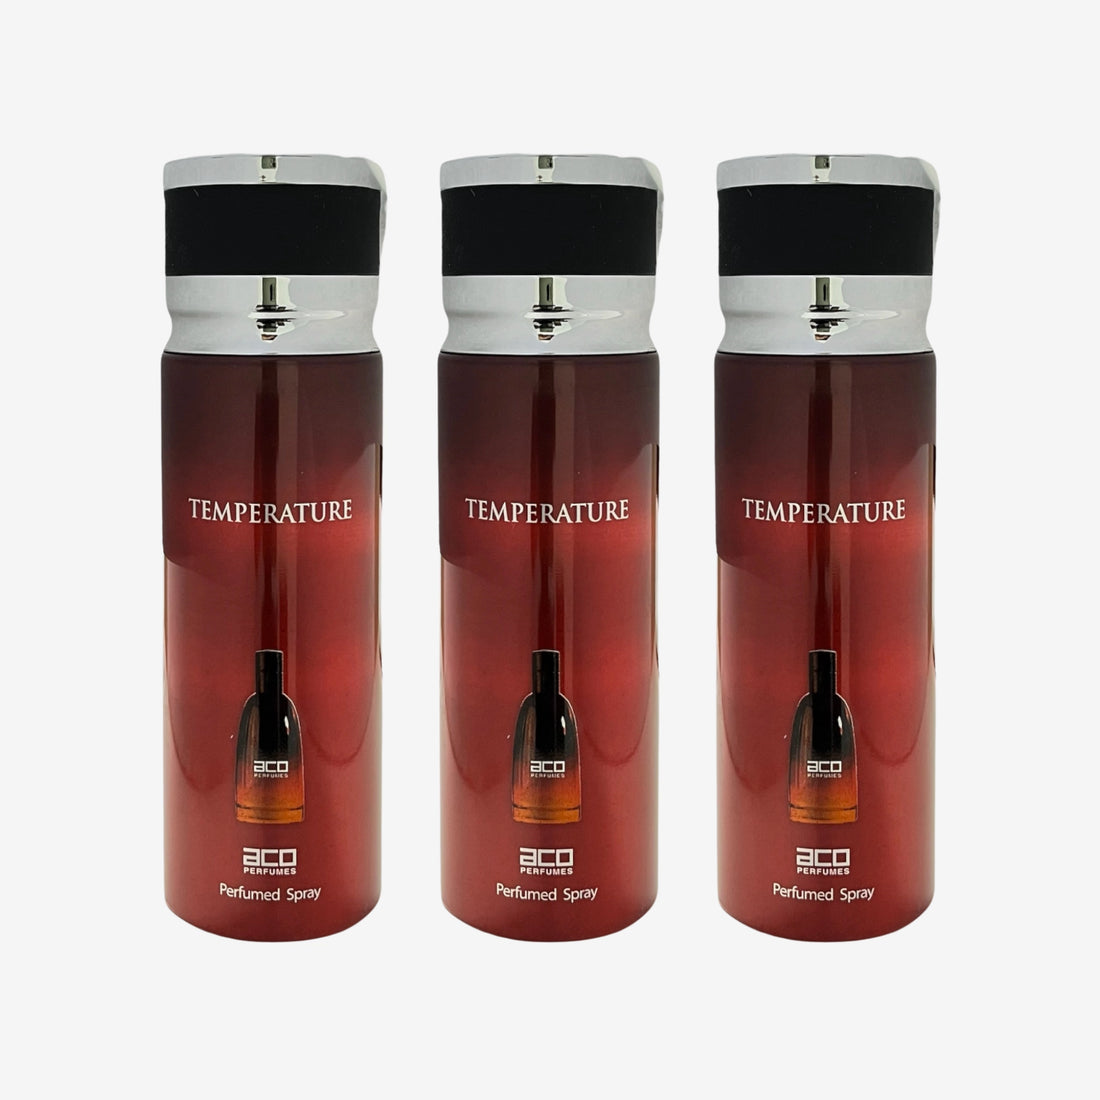 ACO Perfumes TEMPERATURE Perfume Body Spray - Inspired By Fahrenheit